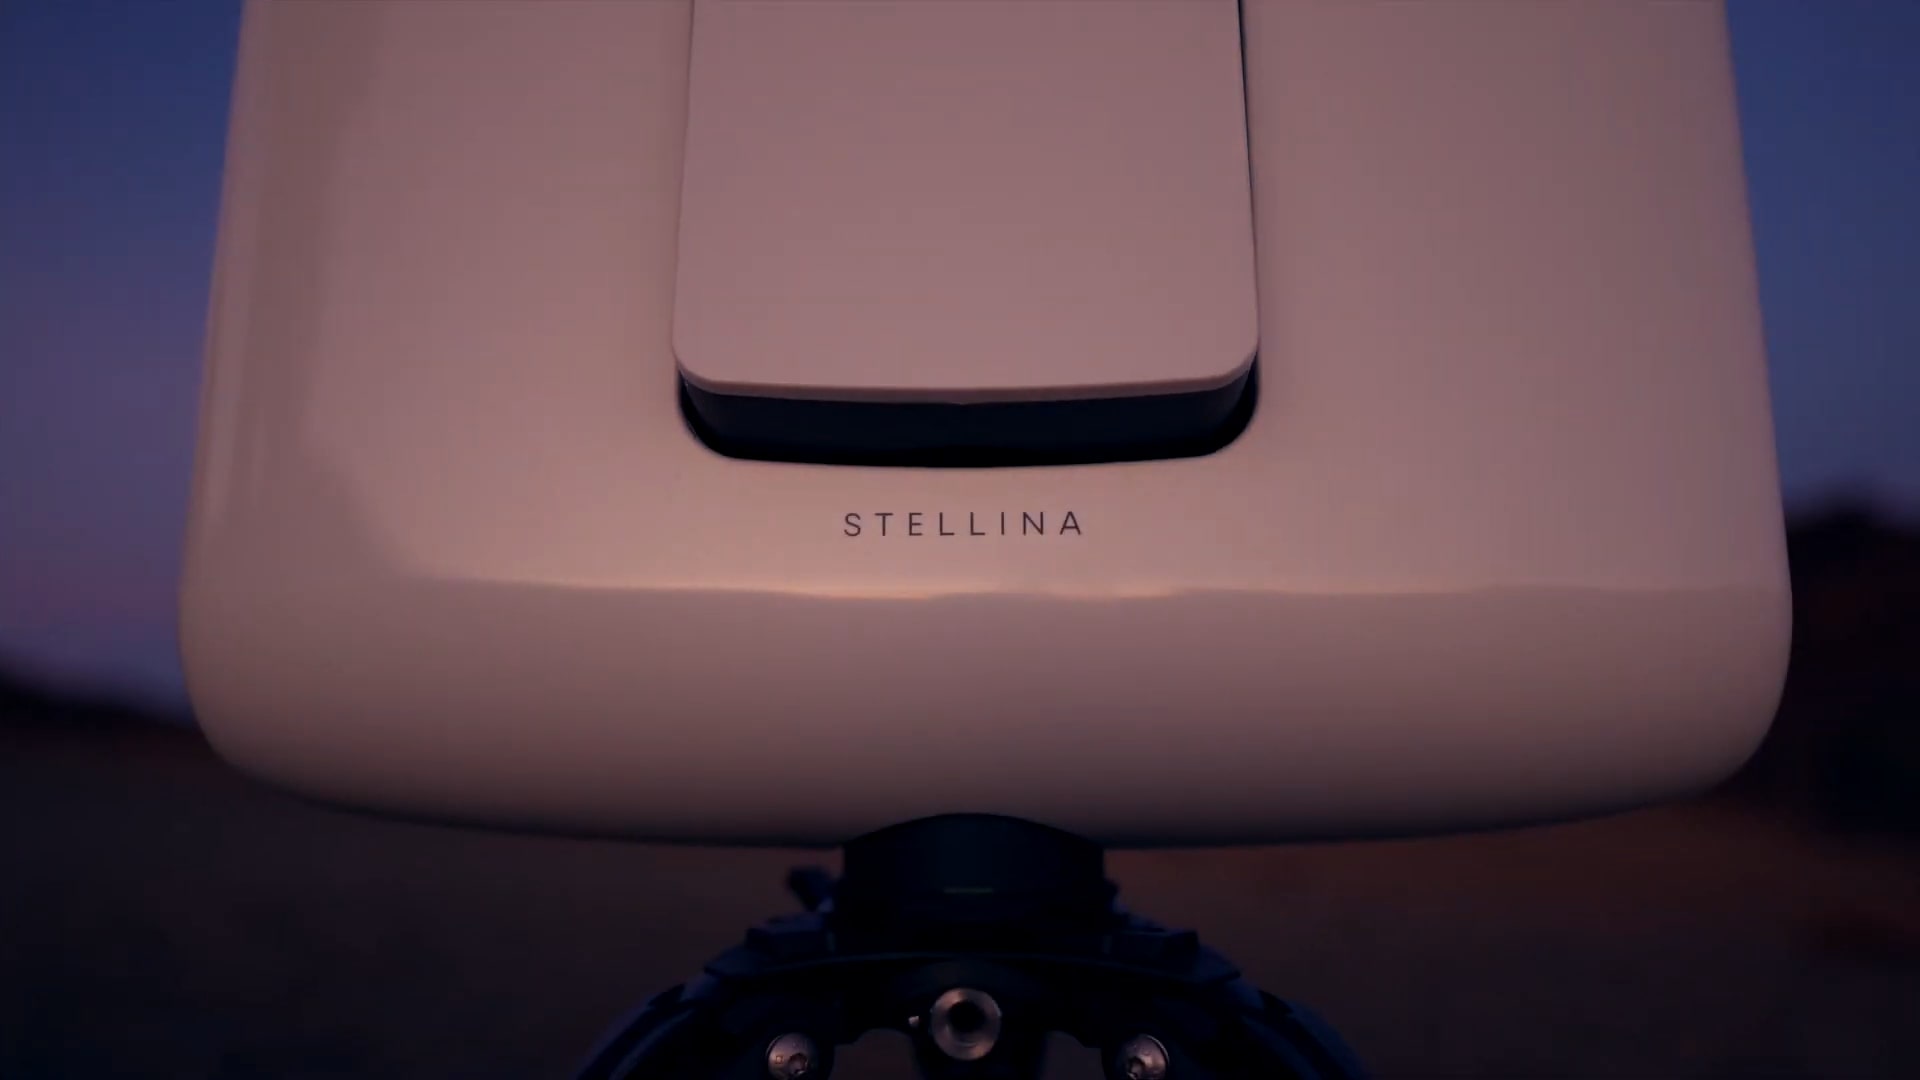 Vaonis giới thiệu tính năng sắp tới cho kính thiên văn thông minh Stellina với khả năng chụp panorama 546MP